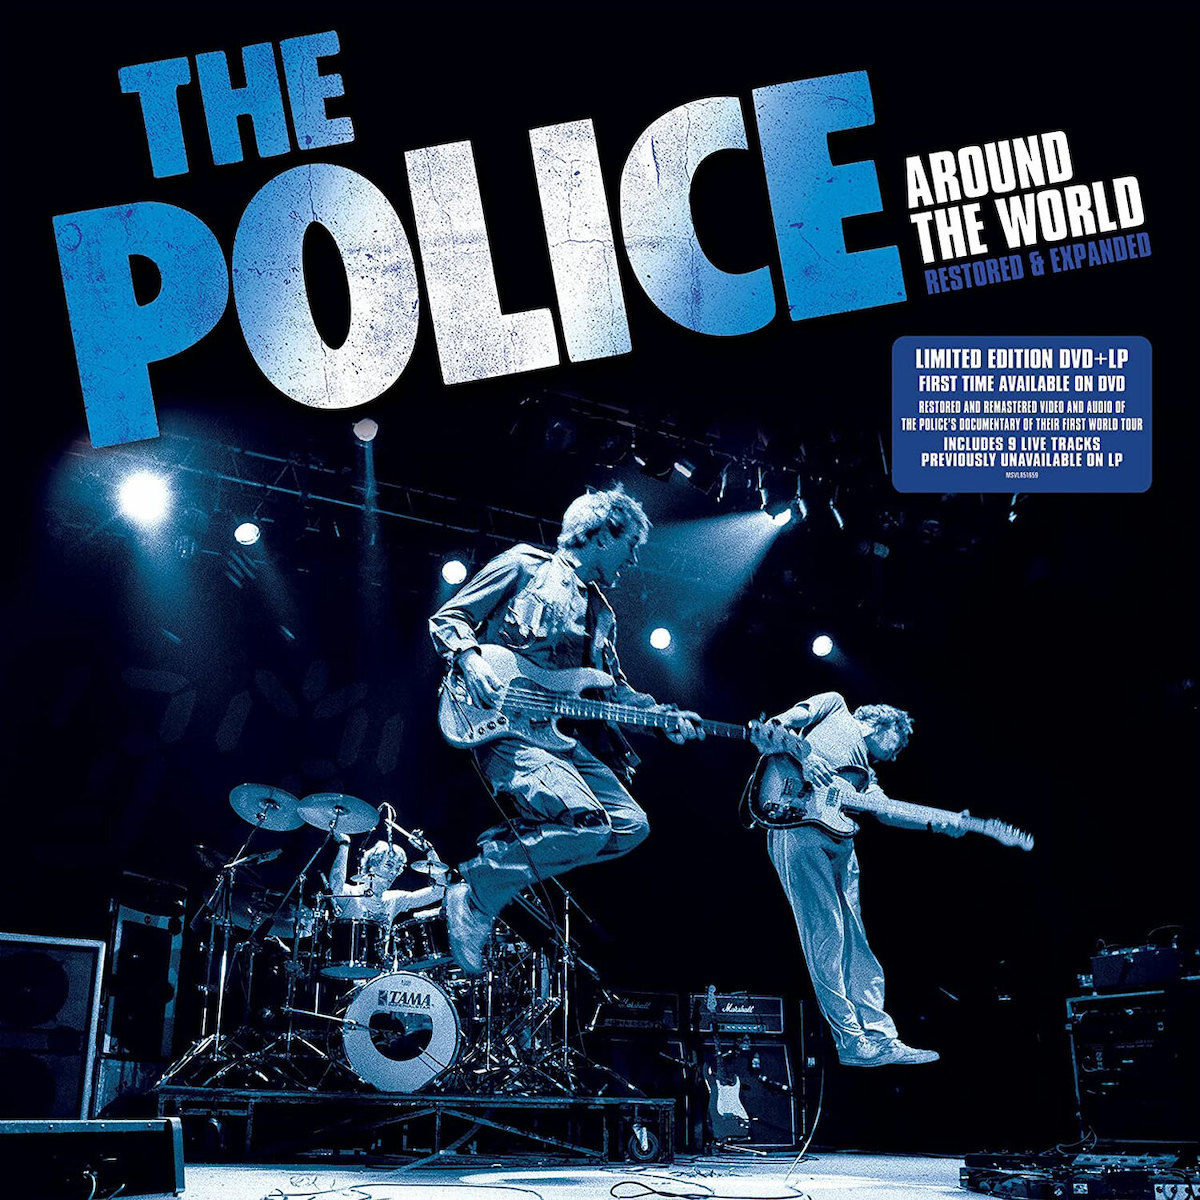 Vinile Police The - Around The World Lp+Dvd NUOVO SIGILLATO EDIZIONE DEL SUBITO DISPONIBILE